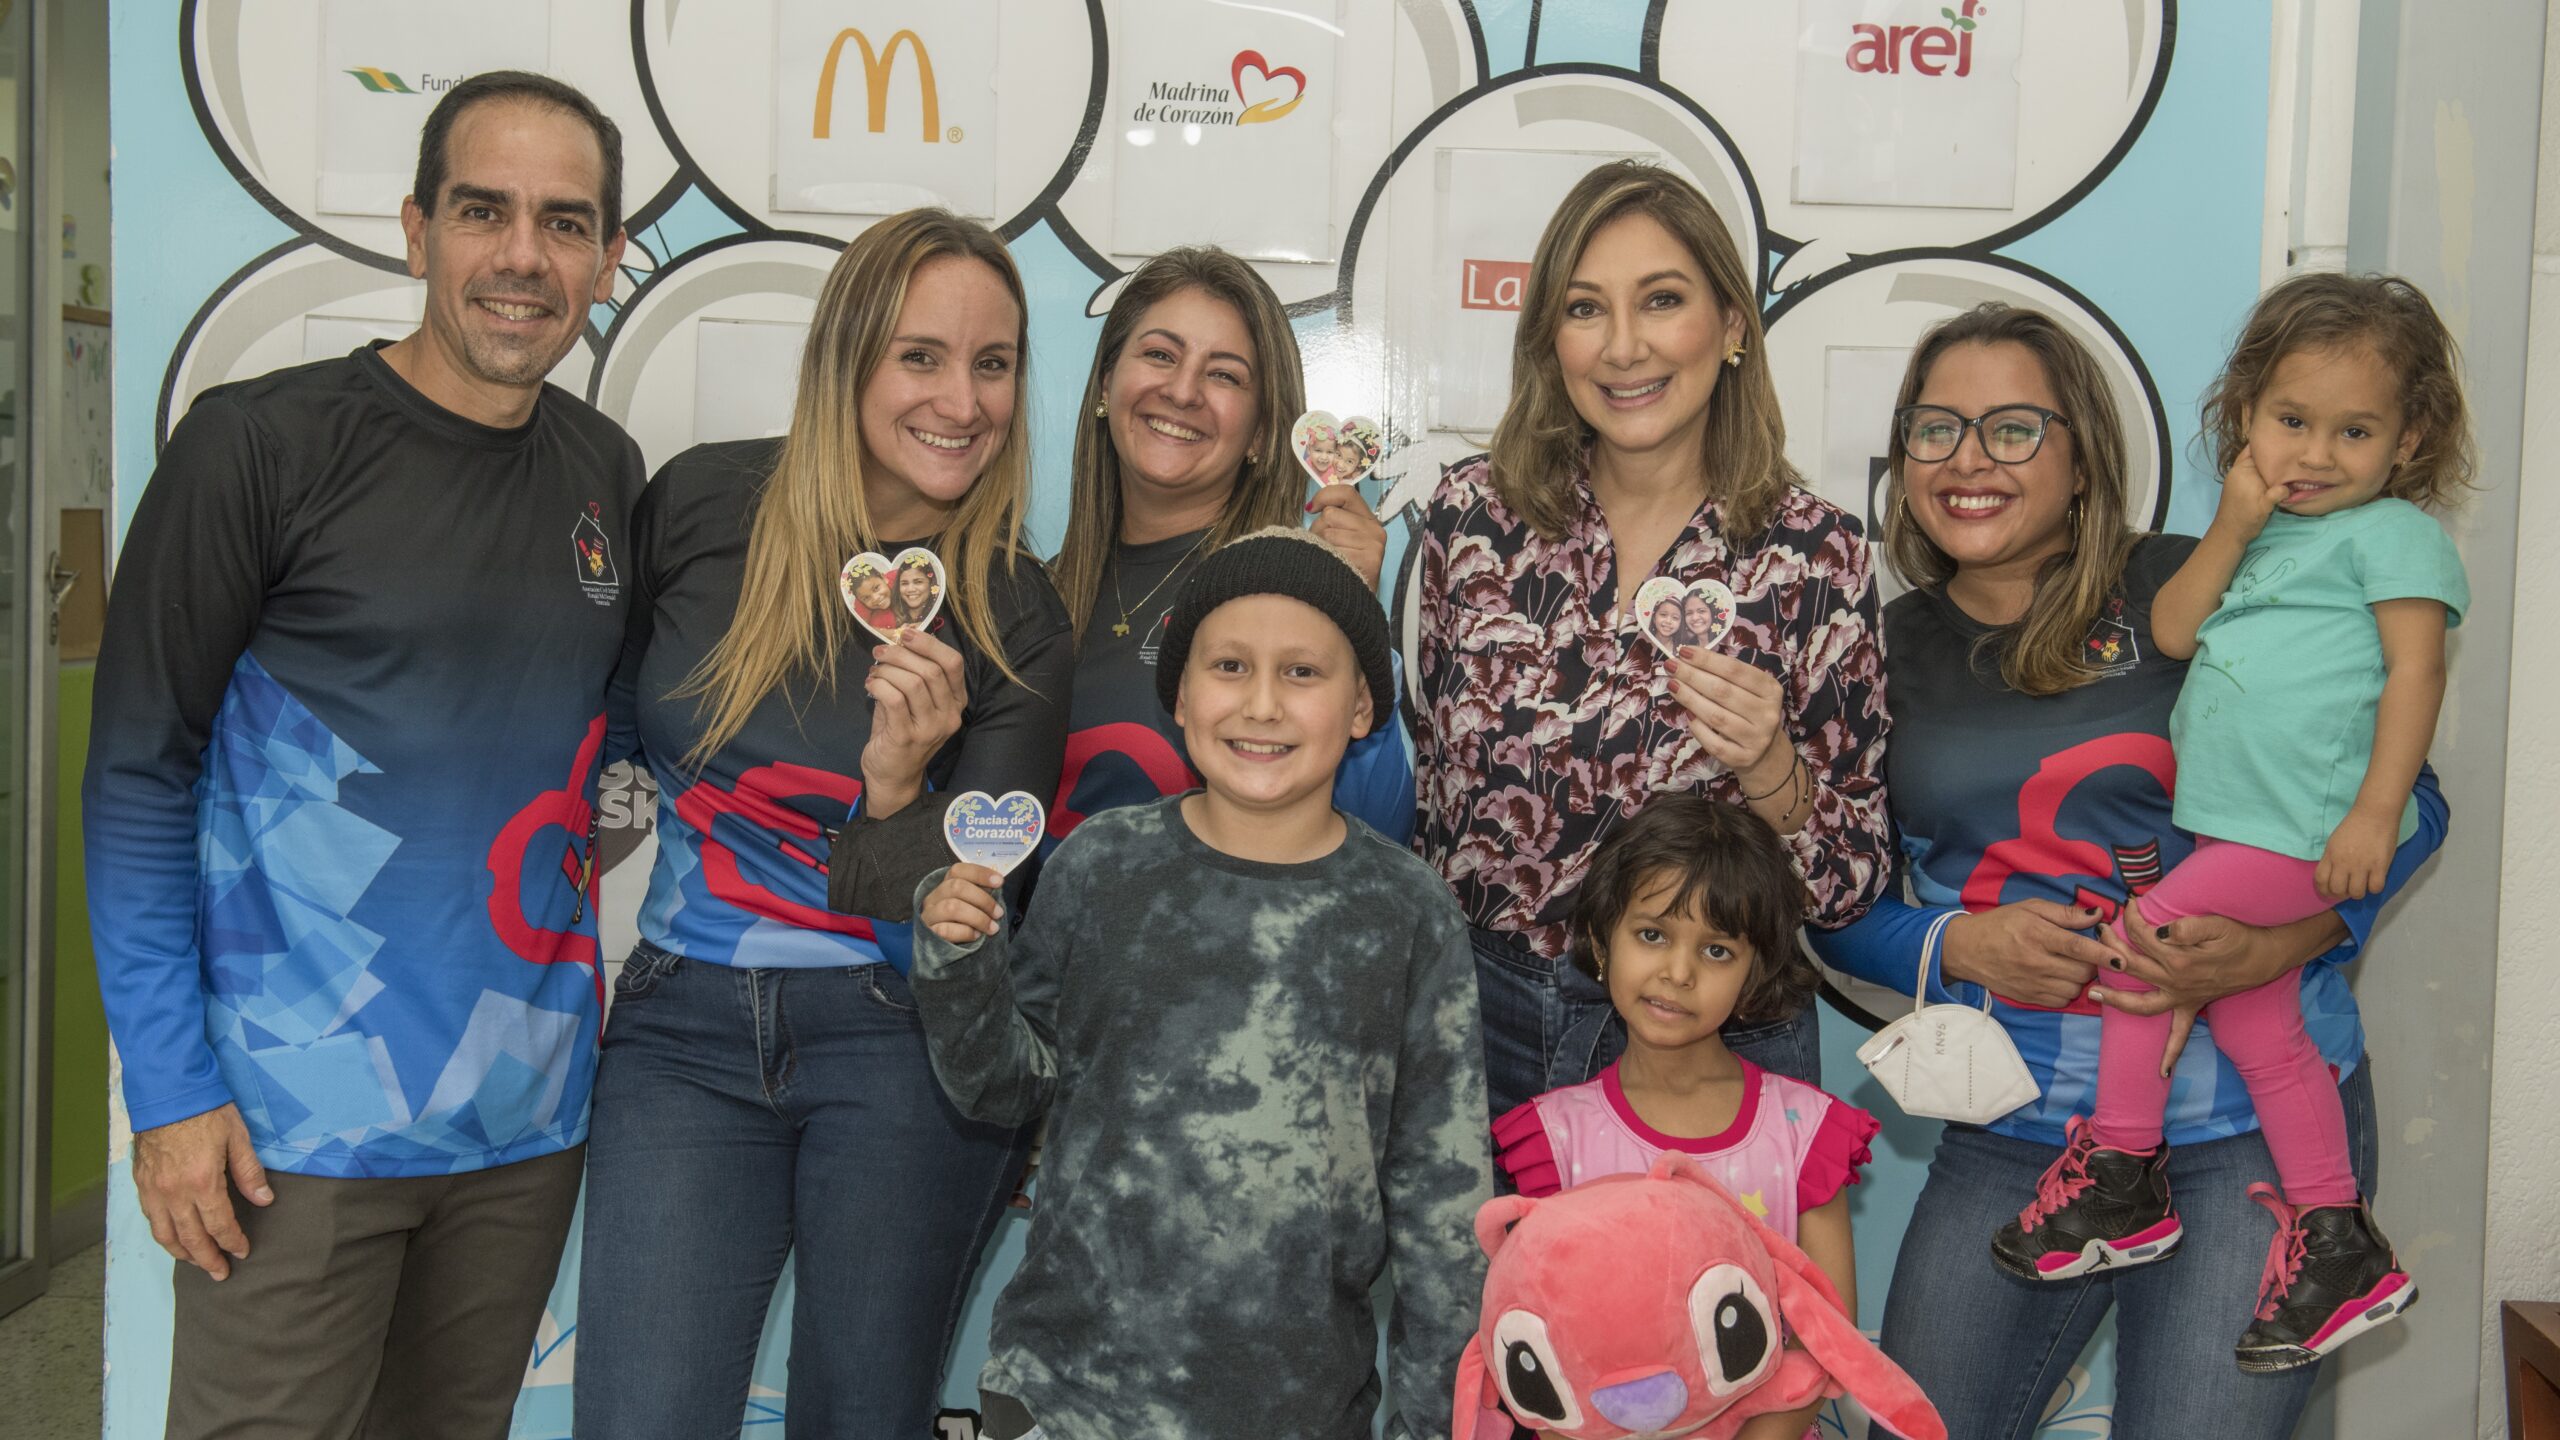 [Venezuela] Inicia campaña de recaudación “Gracias de Corazón” a beneficio de la casa Ronald McDonald